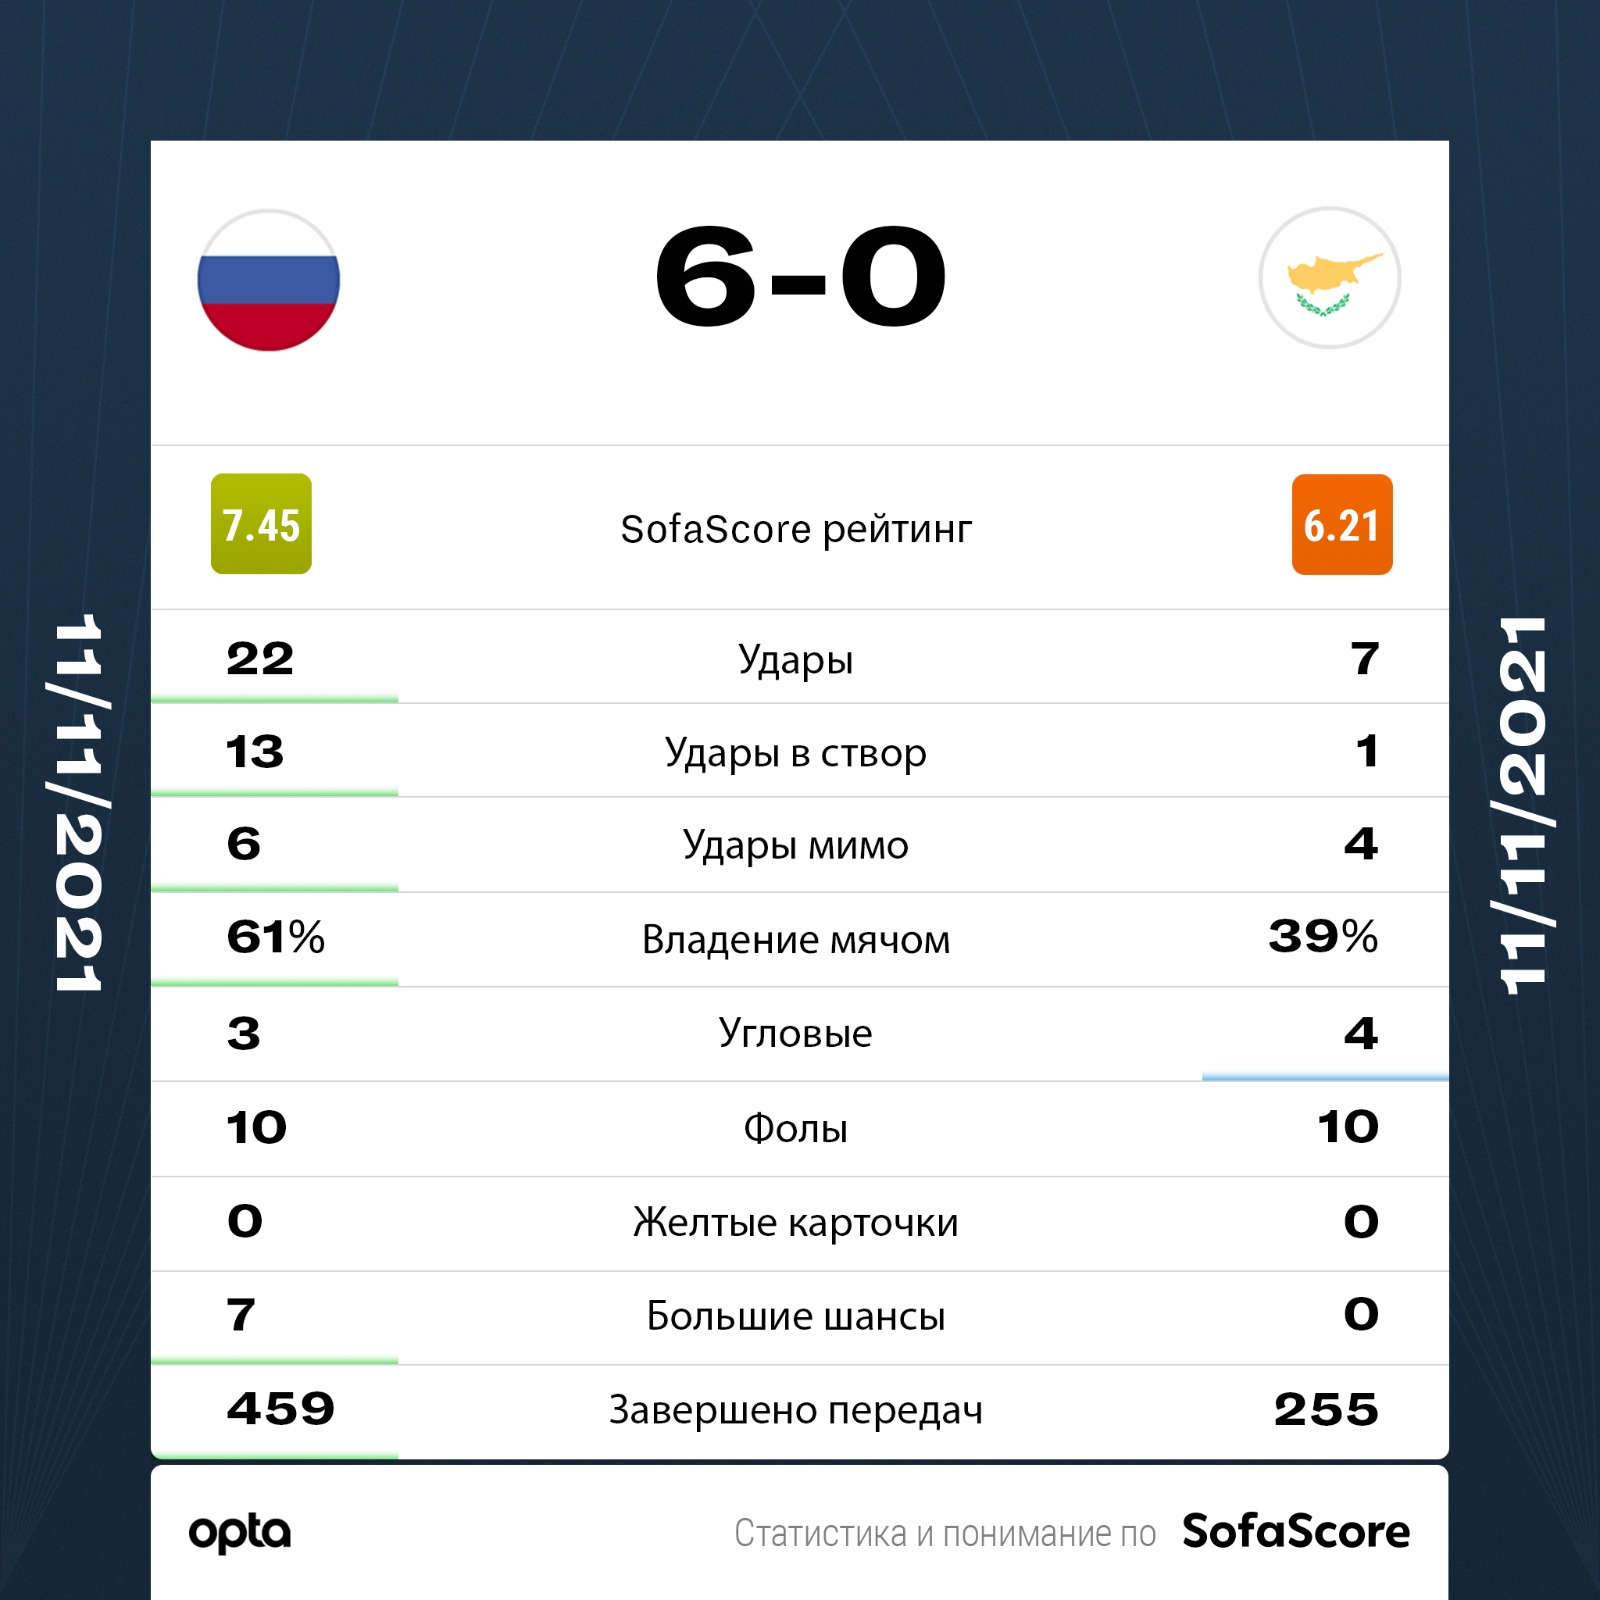 Сборная России по футболу одержала крупнейшую победу в квалификации ЧМ